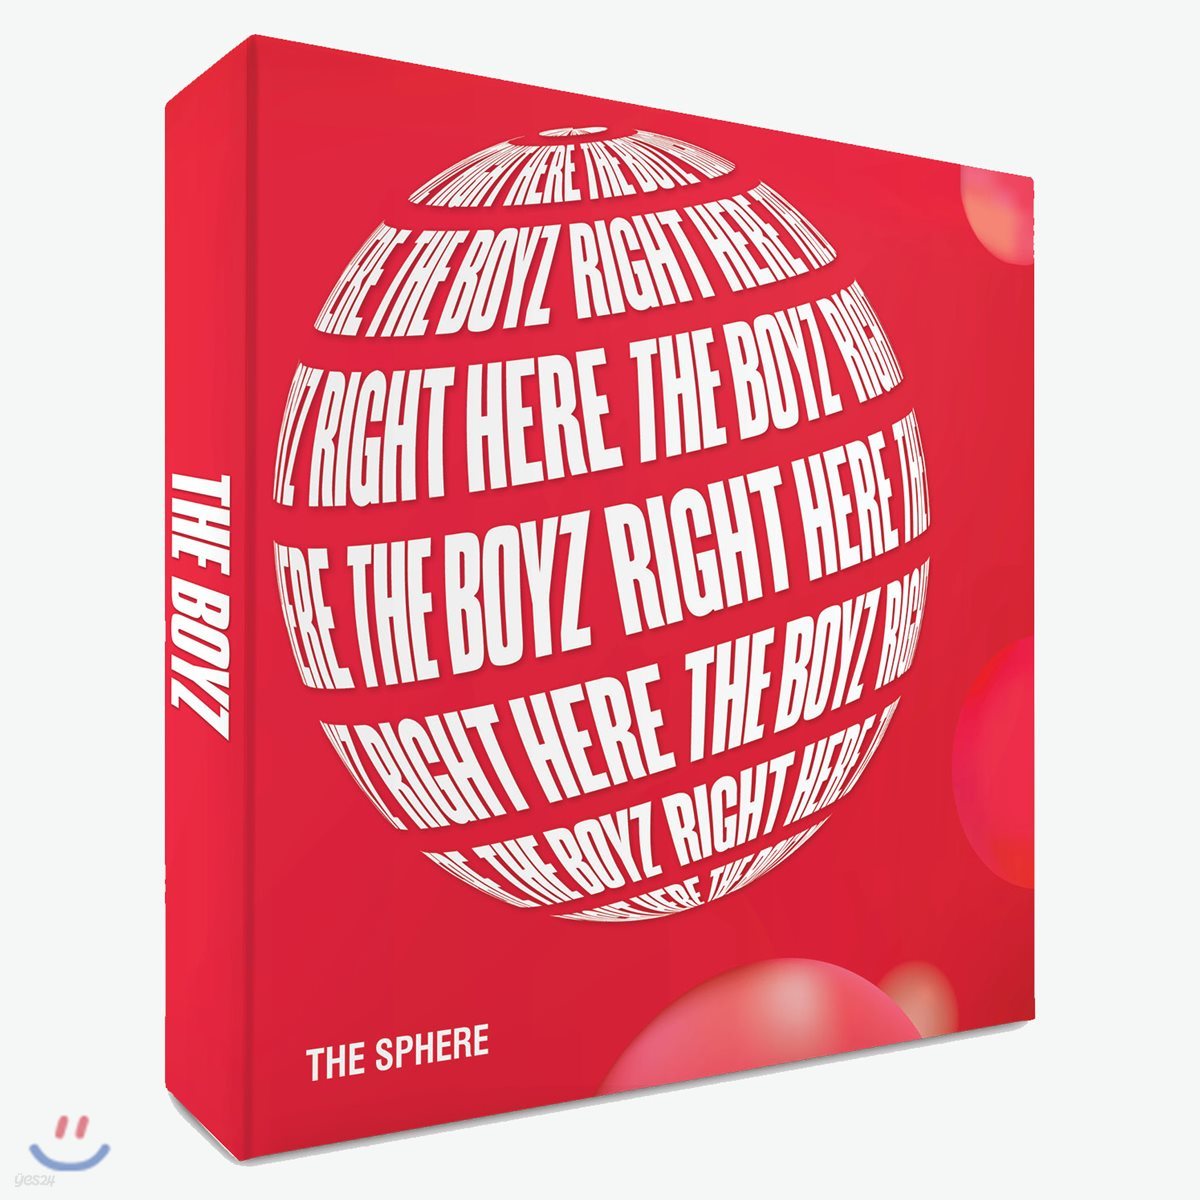 더보이즈 (The Boyz) - The Sphere [REAL ver.]